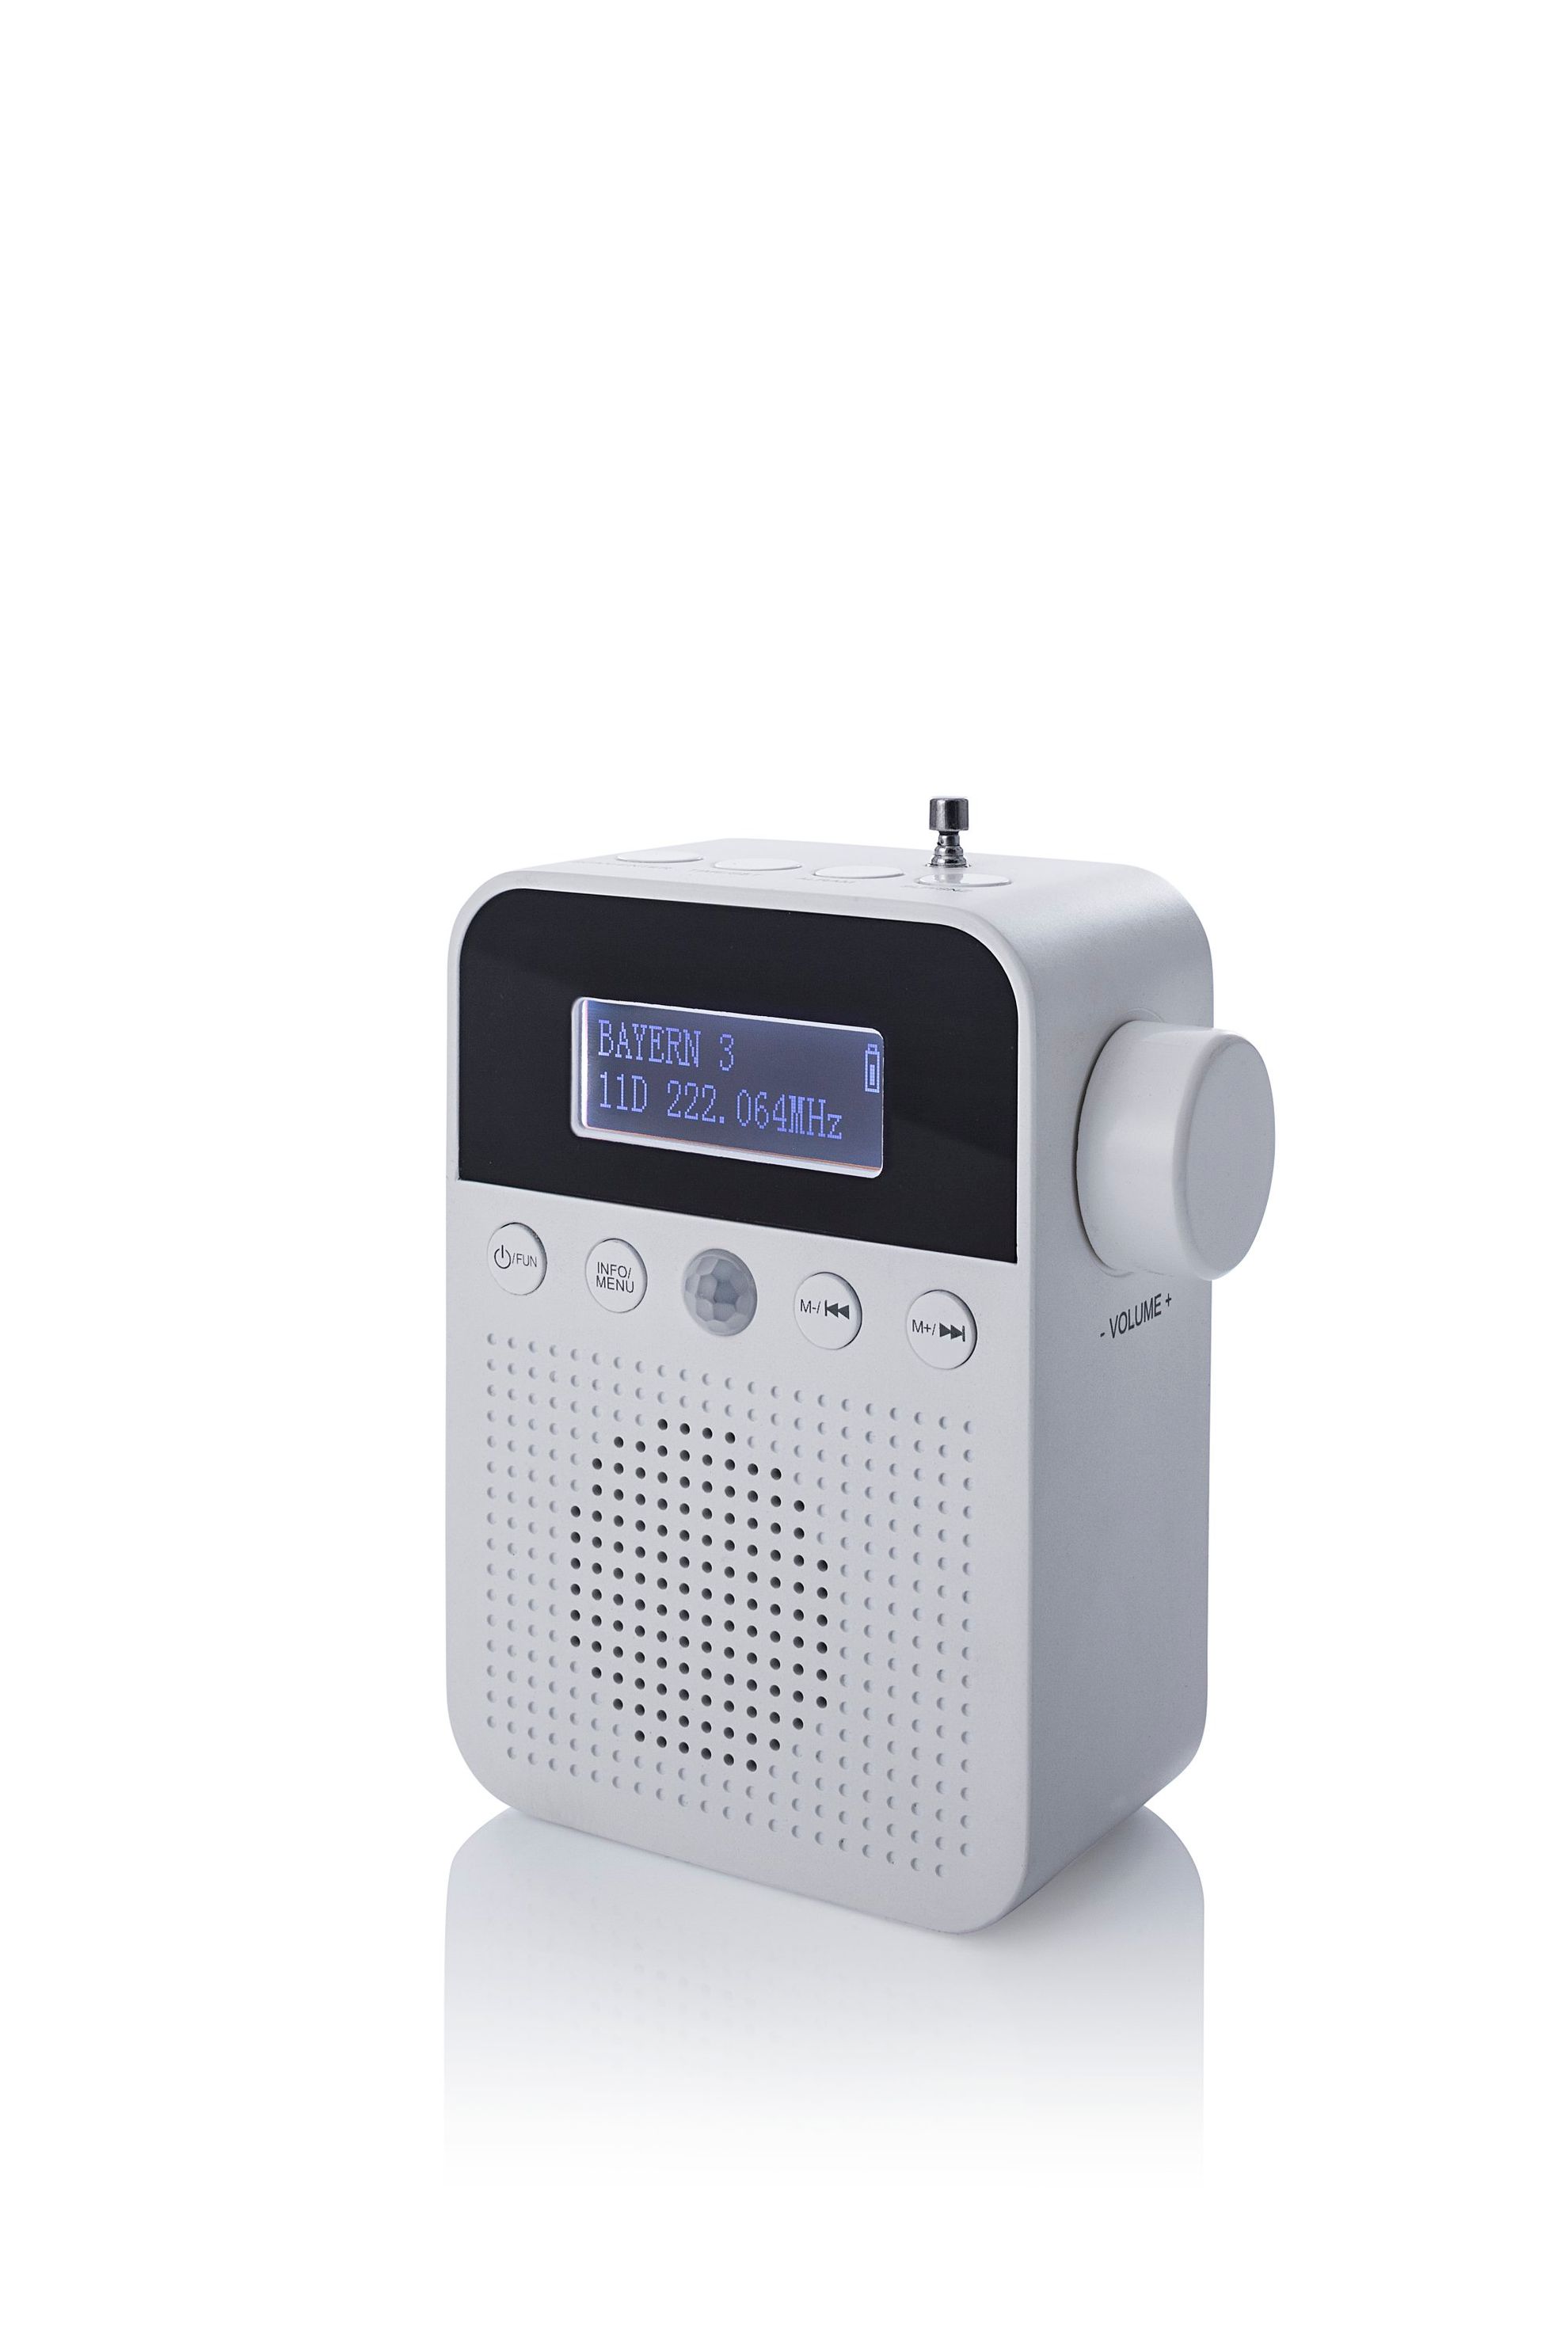 DAB+ Steckdosenradio mit Bewegungsmelder bestellen | Weltbild.de